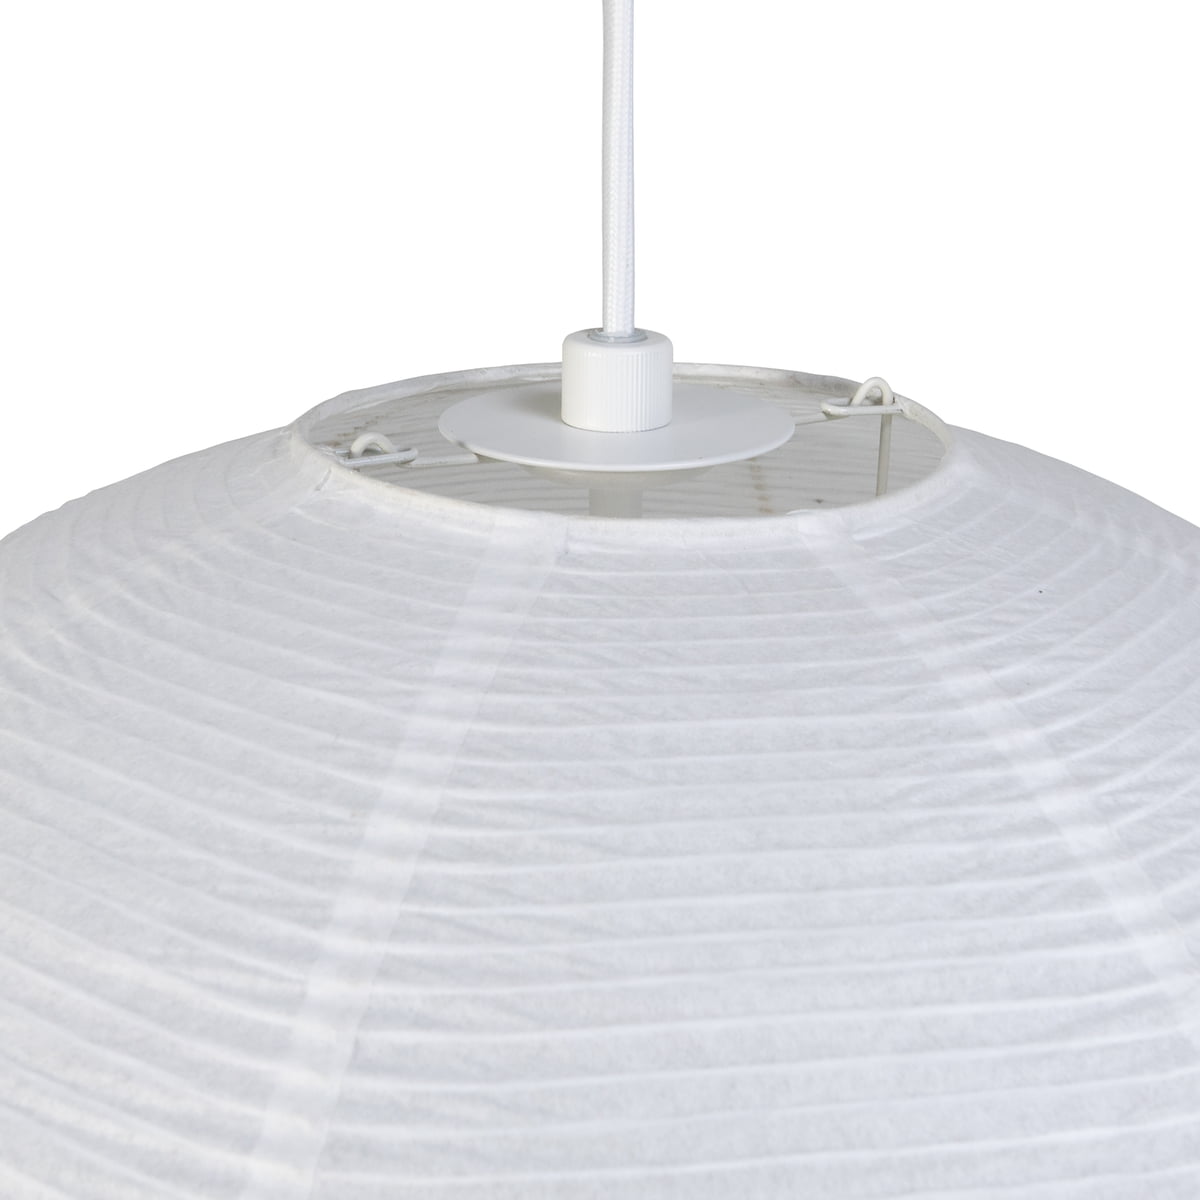 Reispapierlampe, Regentropfen, H: 27 cm, 25 cm, Weiß, 1 Stck.